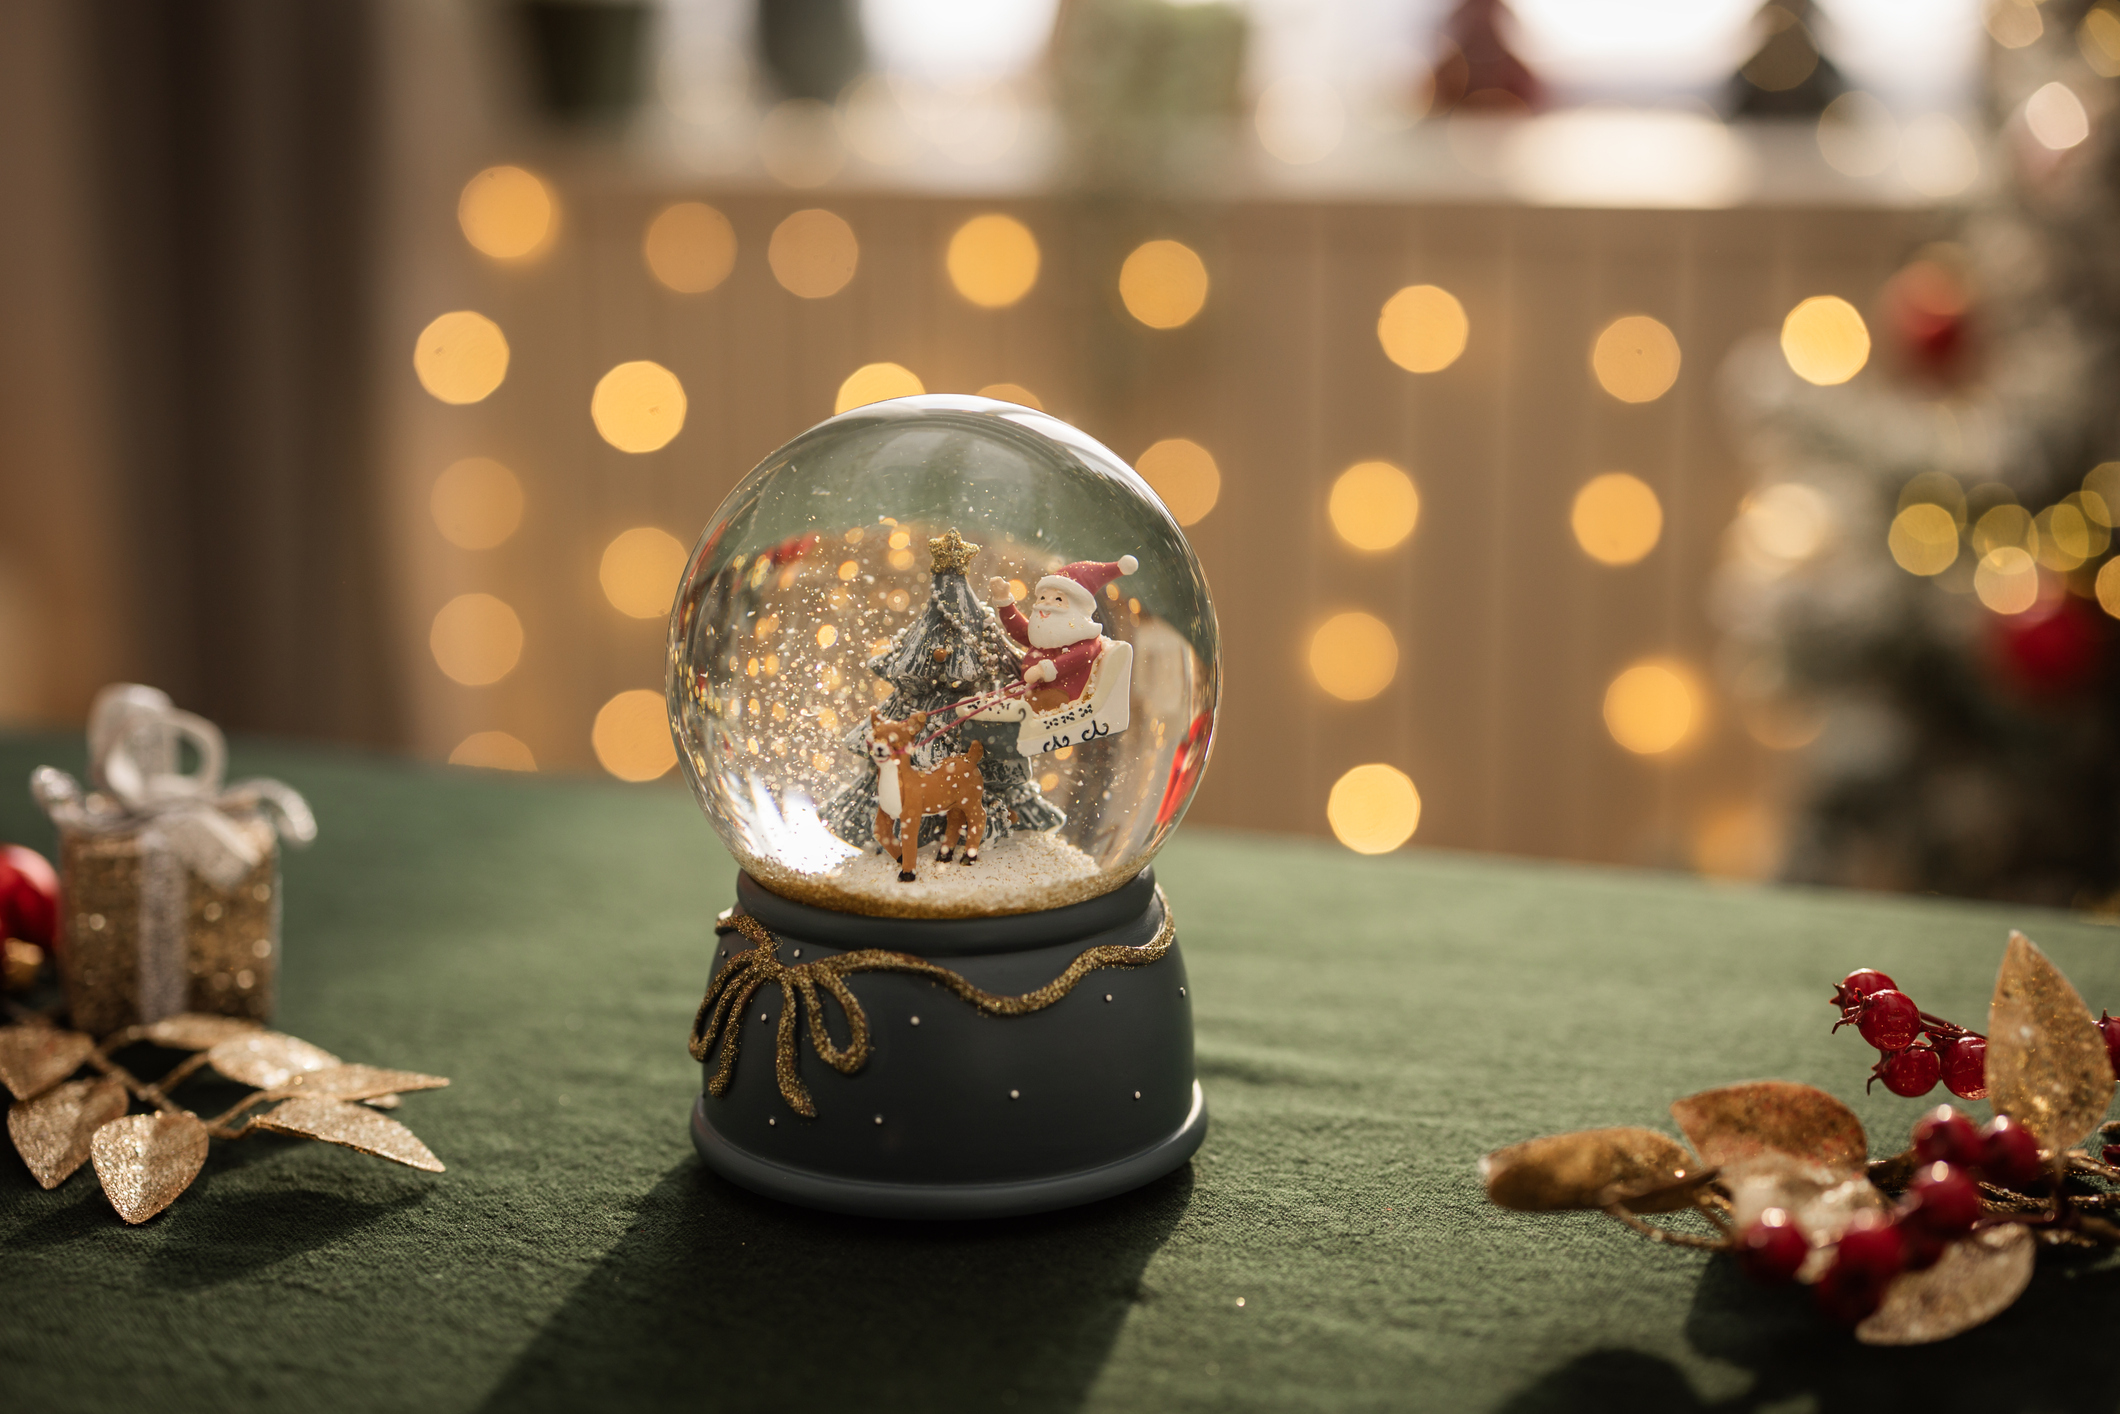 Une boule à neige est posée sur une table verte avec des lumières en arrière-plan. Elle contient un arbre vert avec une étoile au sommet, un père Noël et un renne.